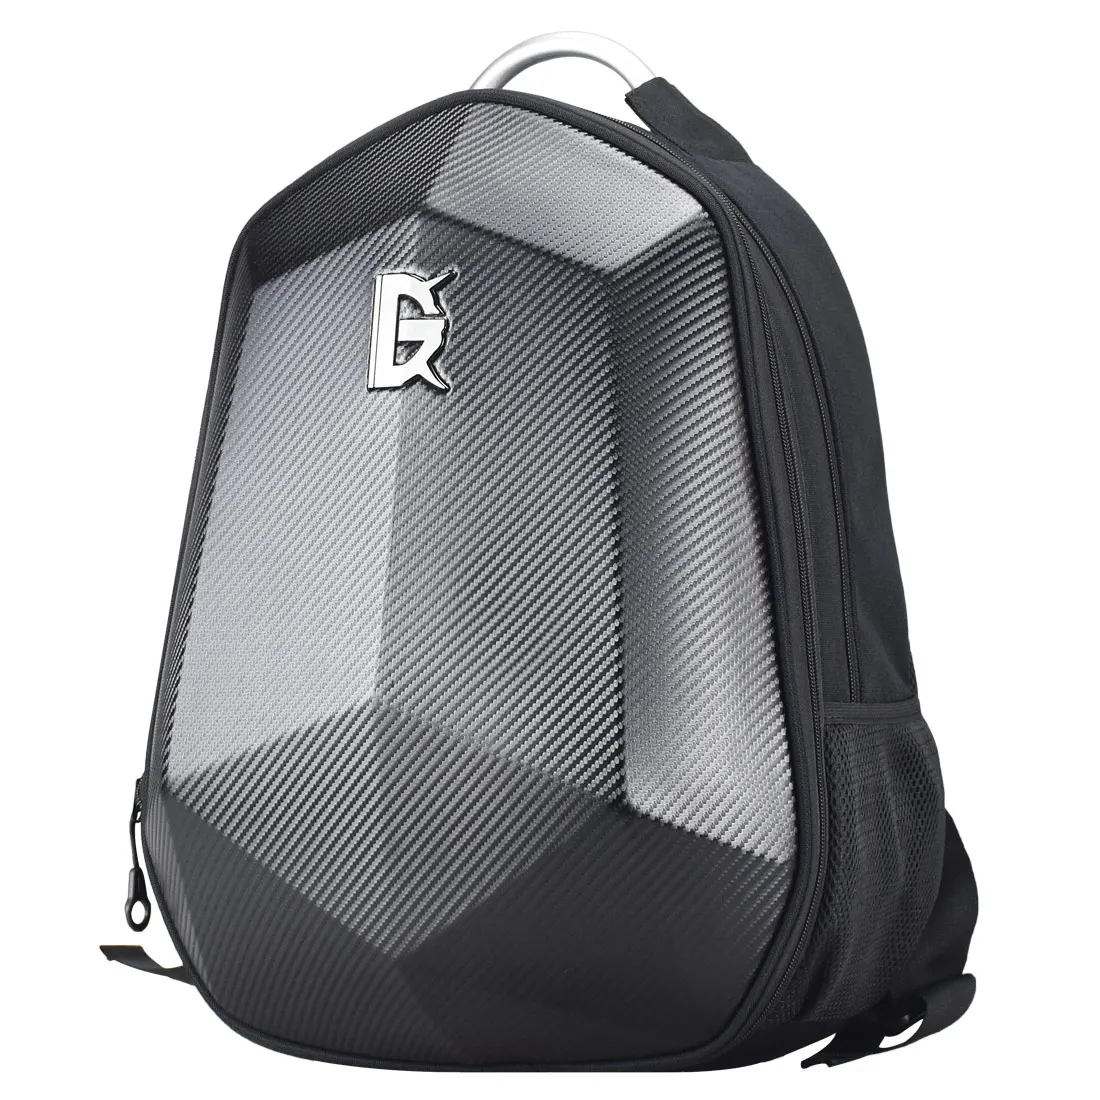 Waterproof Motorcycle Bag Breathable Helmet Backpack Multifunction Motocross Carbon Fiber Hard Shell Backpack